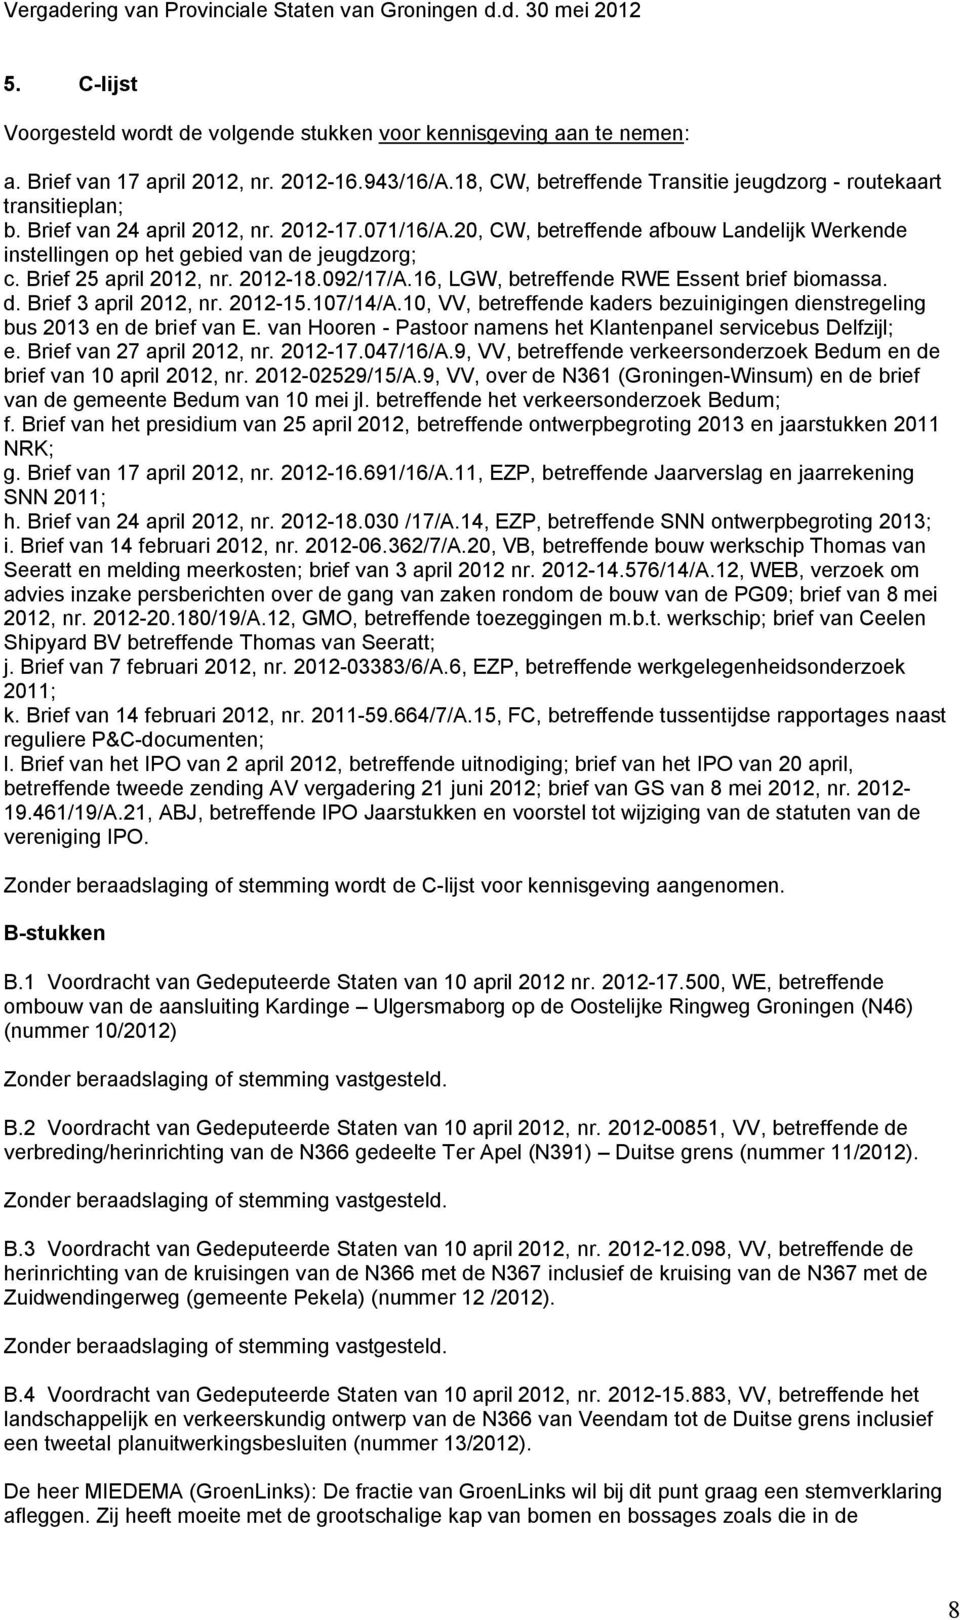 16, LGW, betreffende RWE Essent brief biomassa. d. Brief 3 april 2012, nr. 2012-15.107/14/A.10, VV, betreffende kaders bezuinigingen dienstregeling bus 2013 en de brief van E.